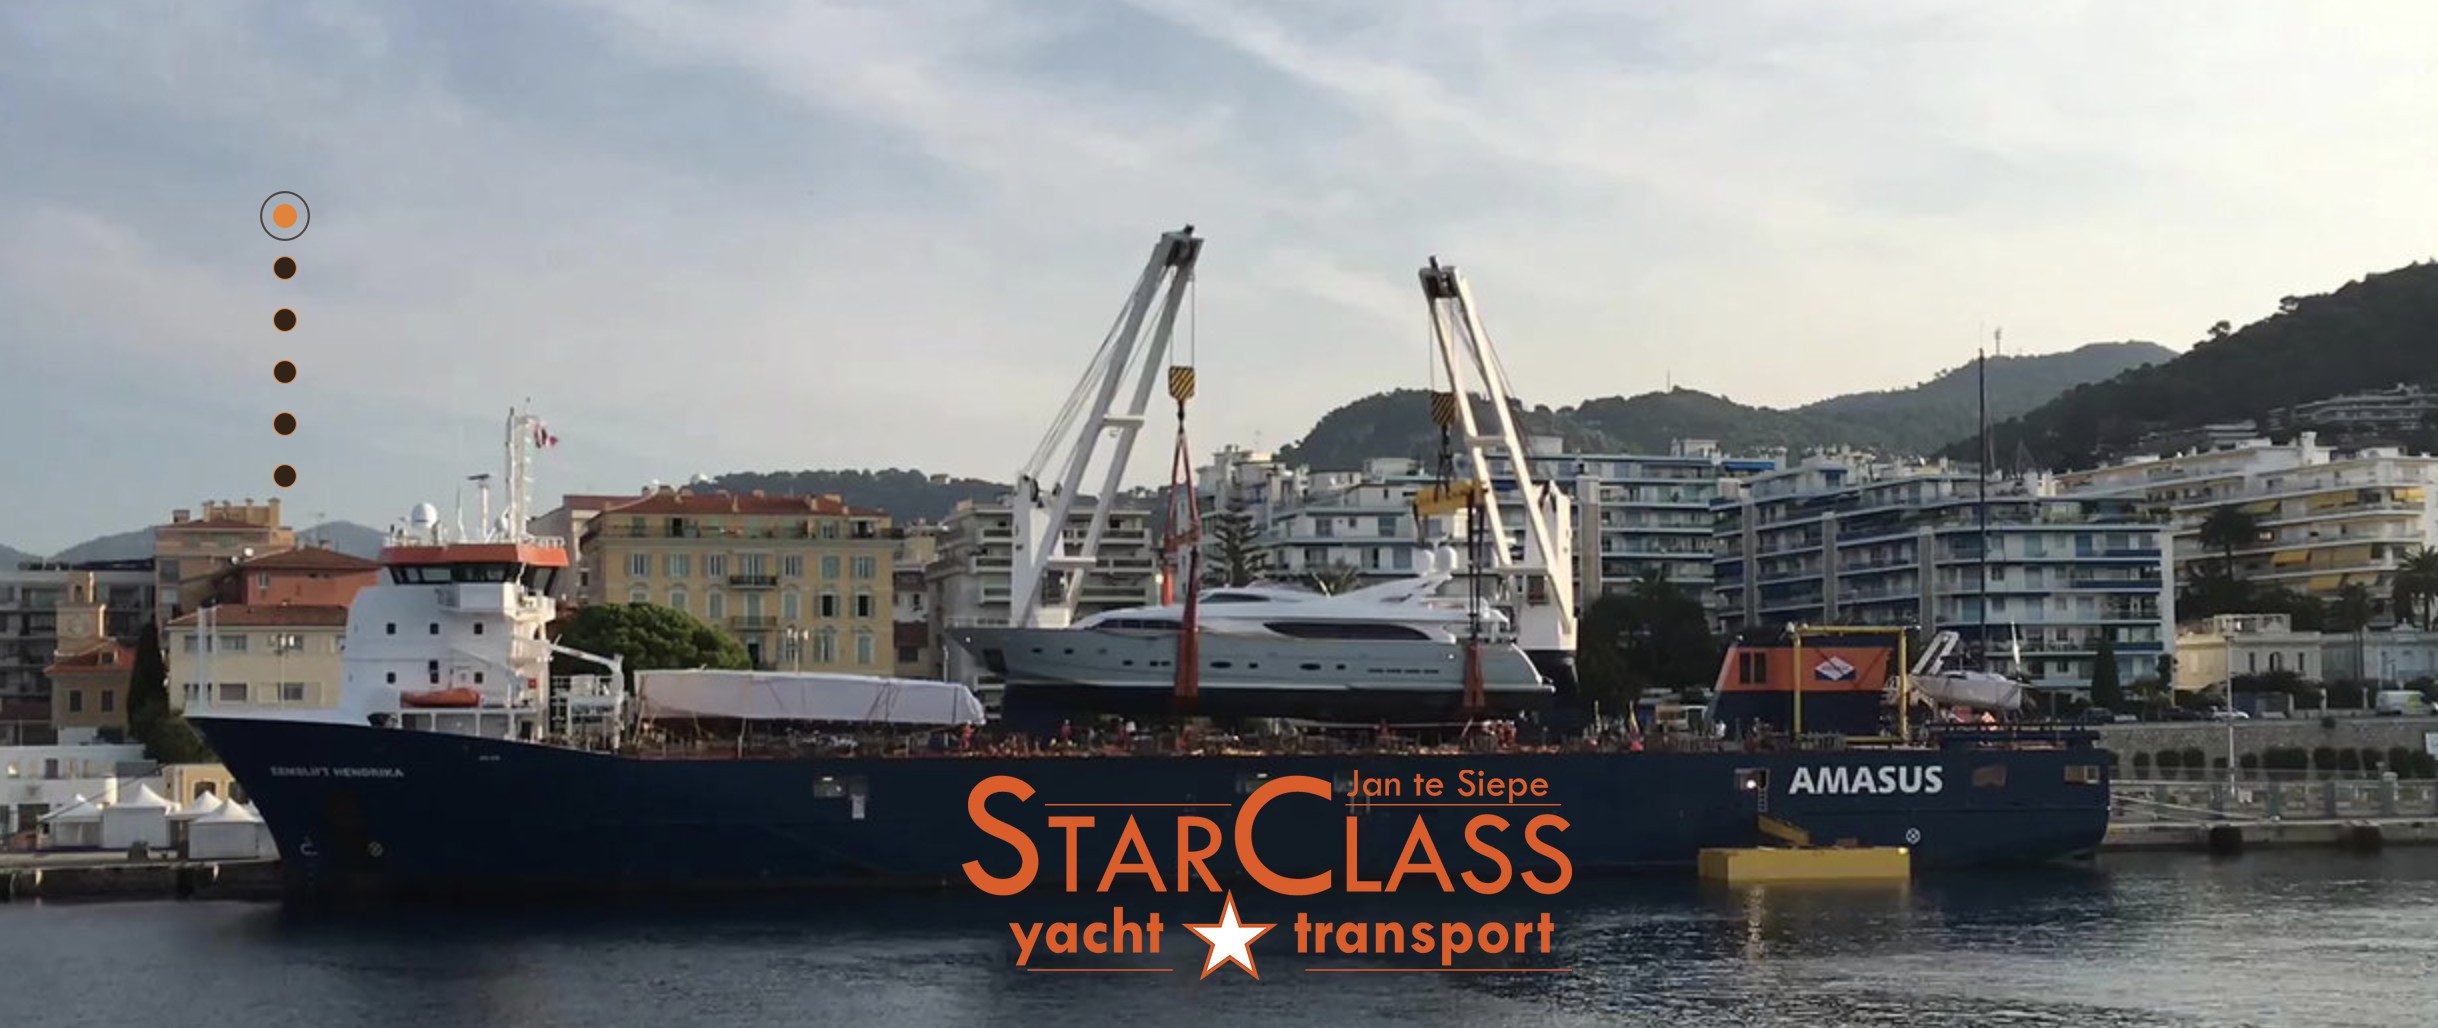 starclass yachttransport